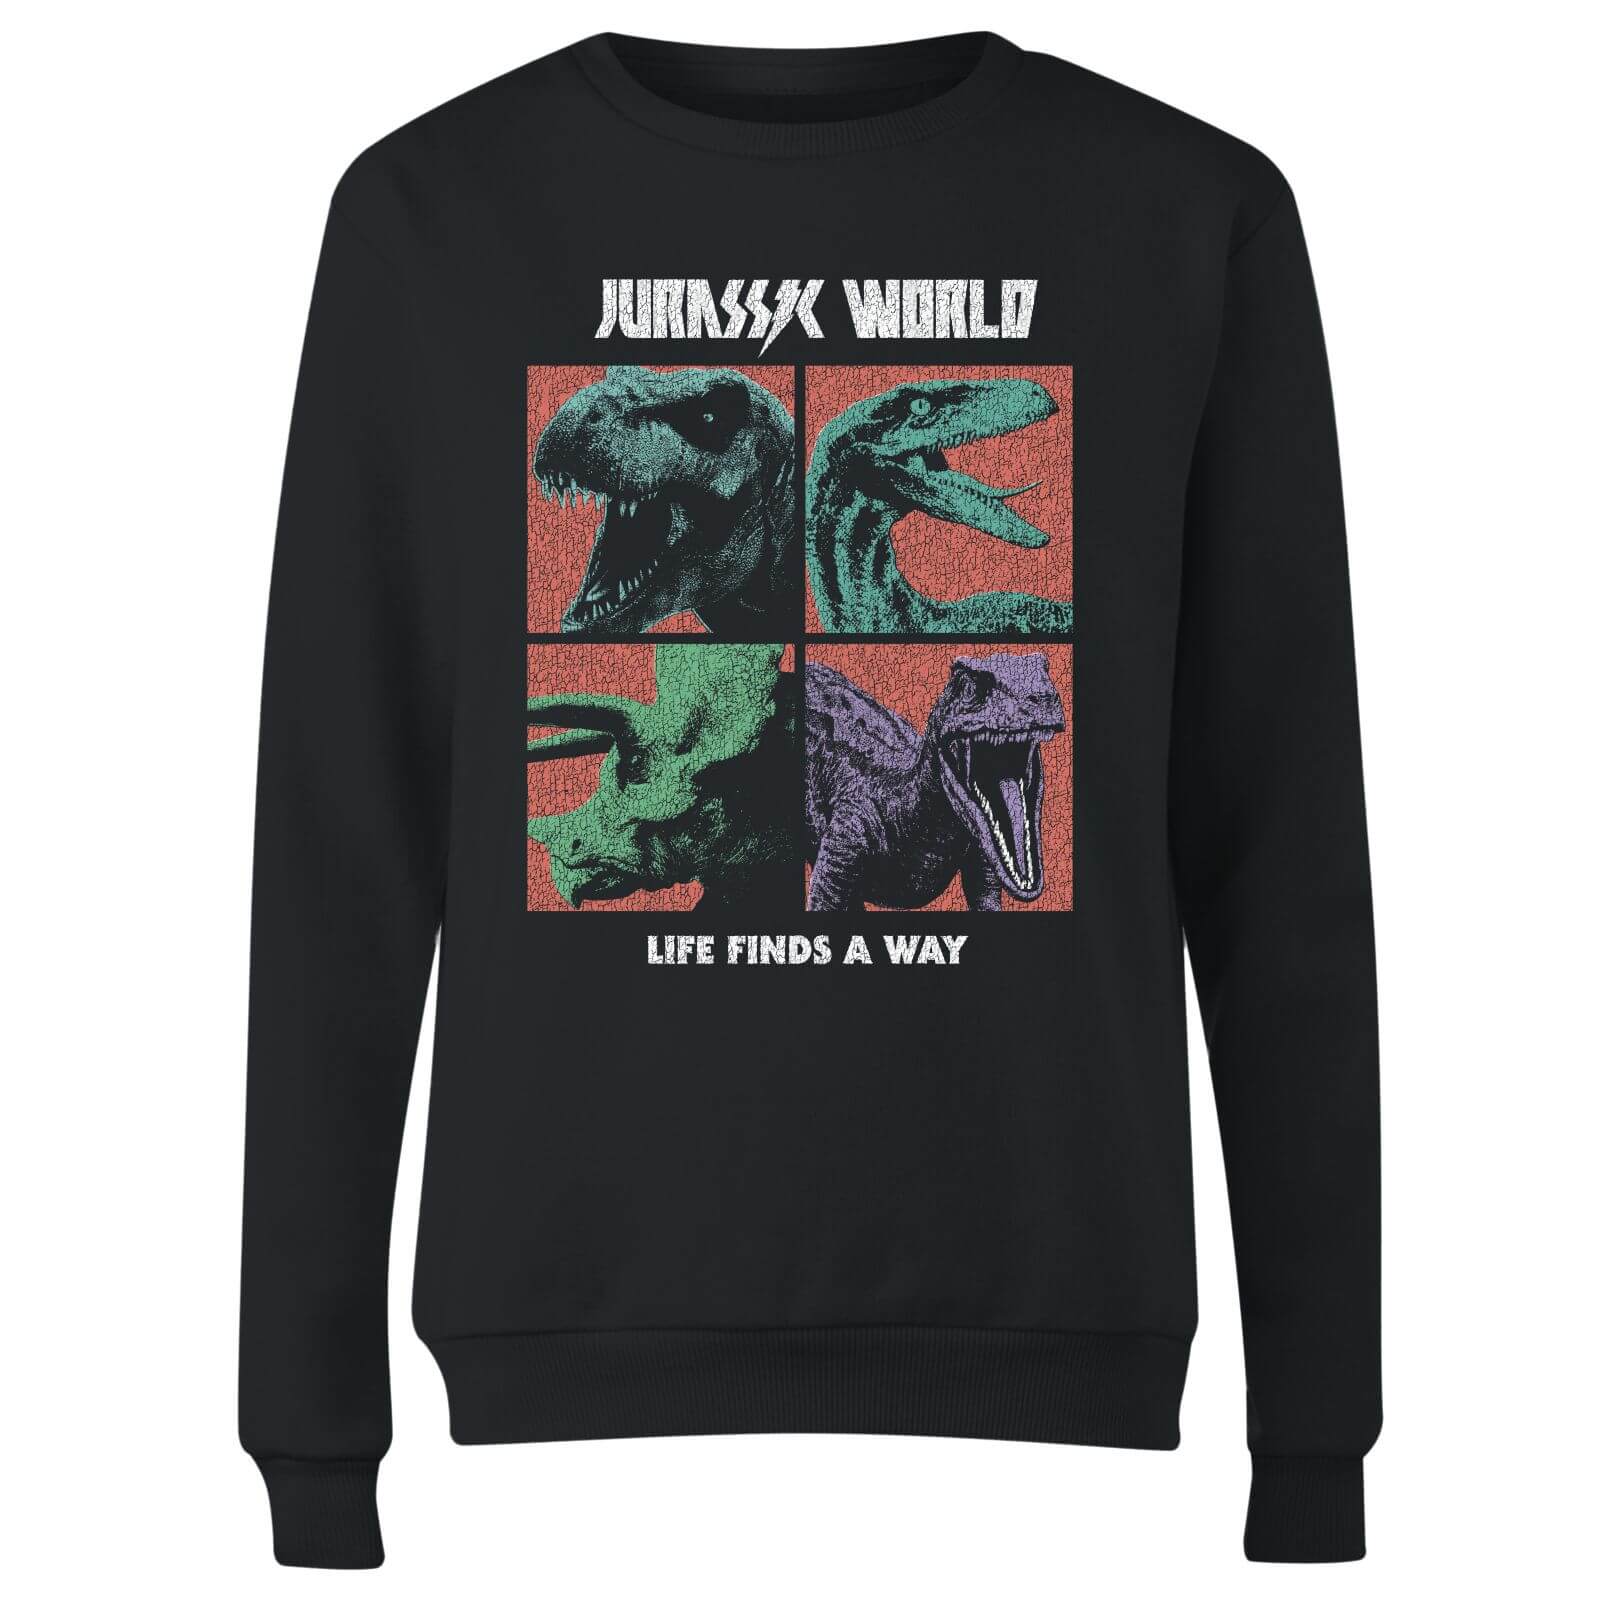 Jurassic Park World Four Colour Faces Women's Sweatshirt - Black - S